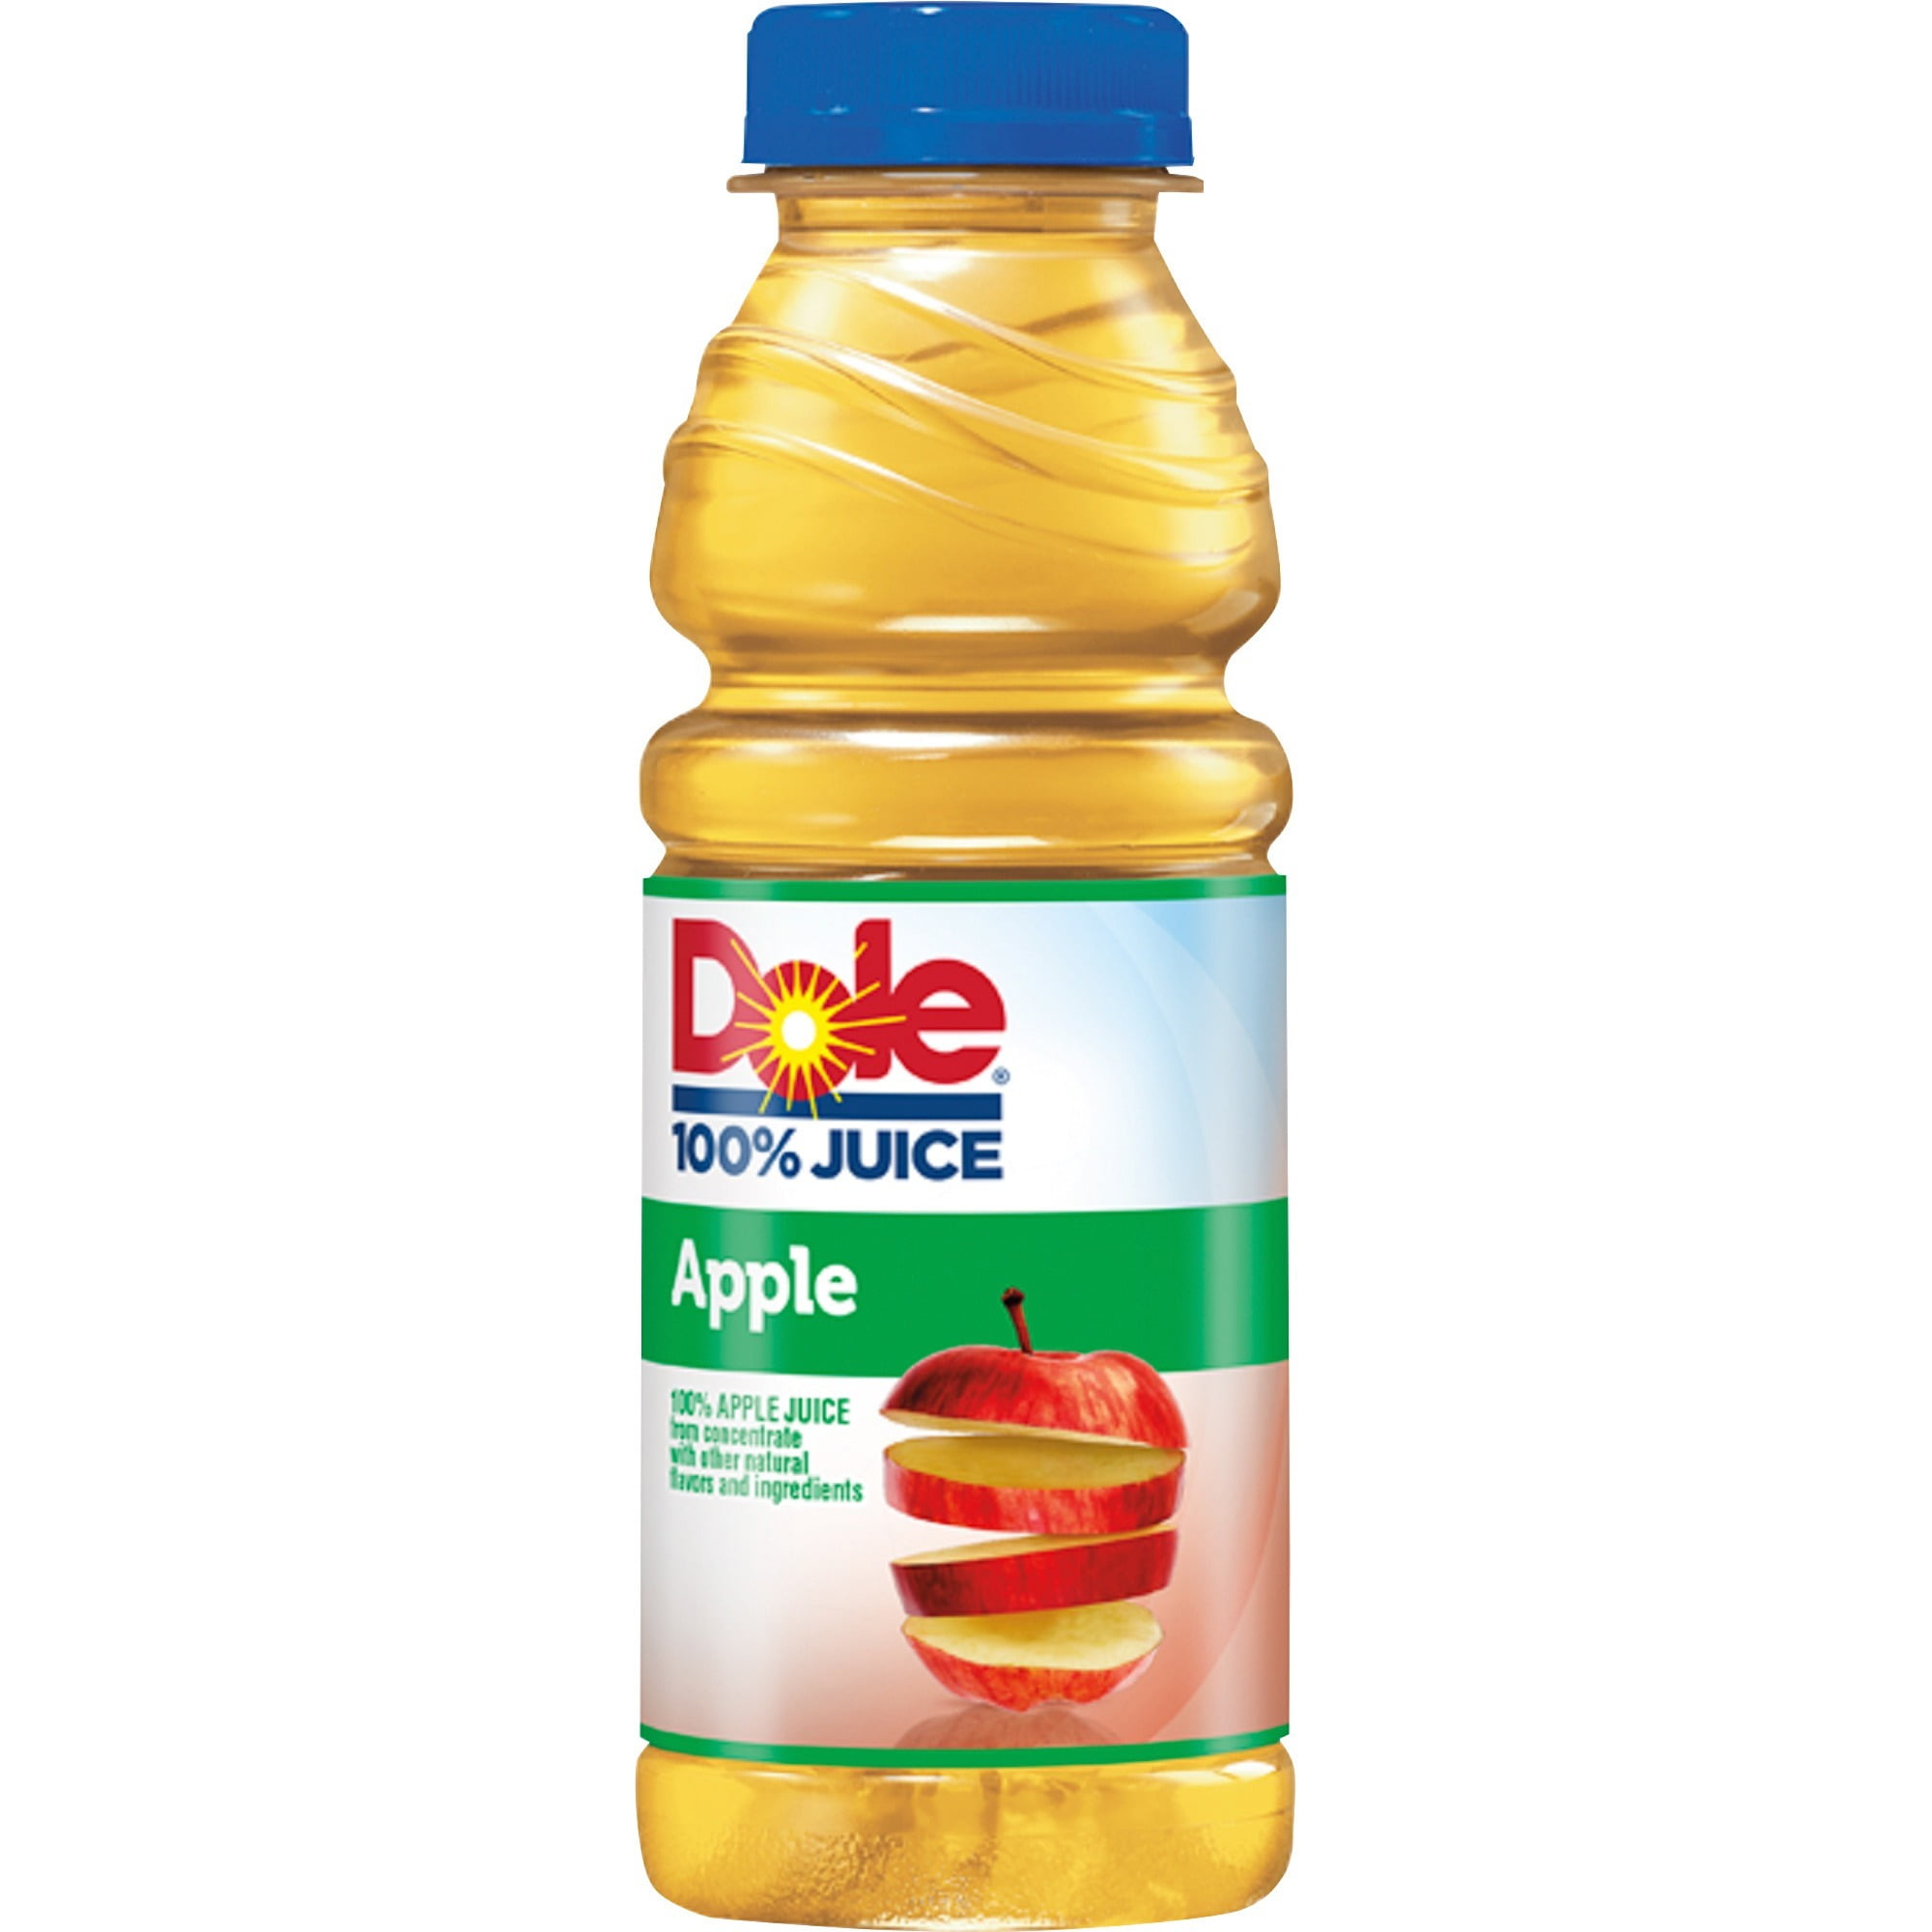 Making Apple Juice Typical Of Prabumulih City